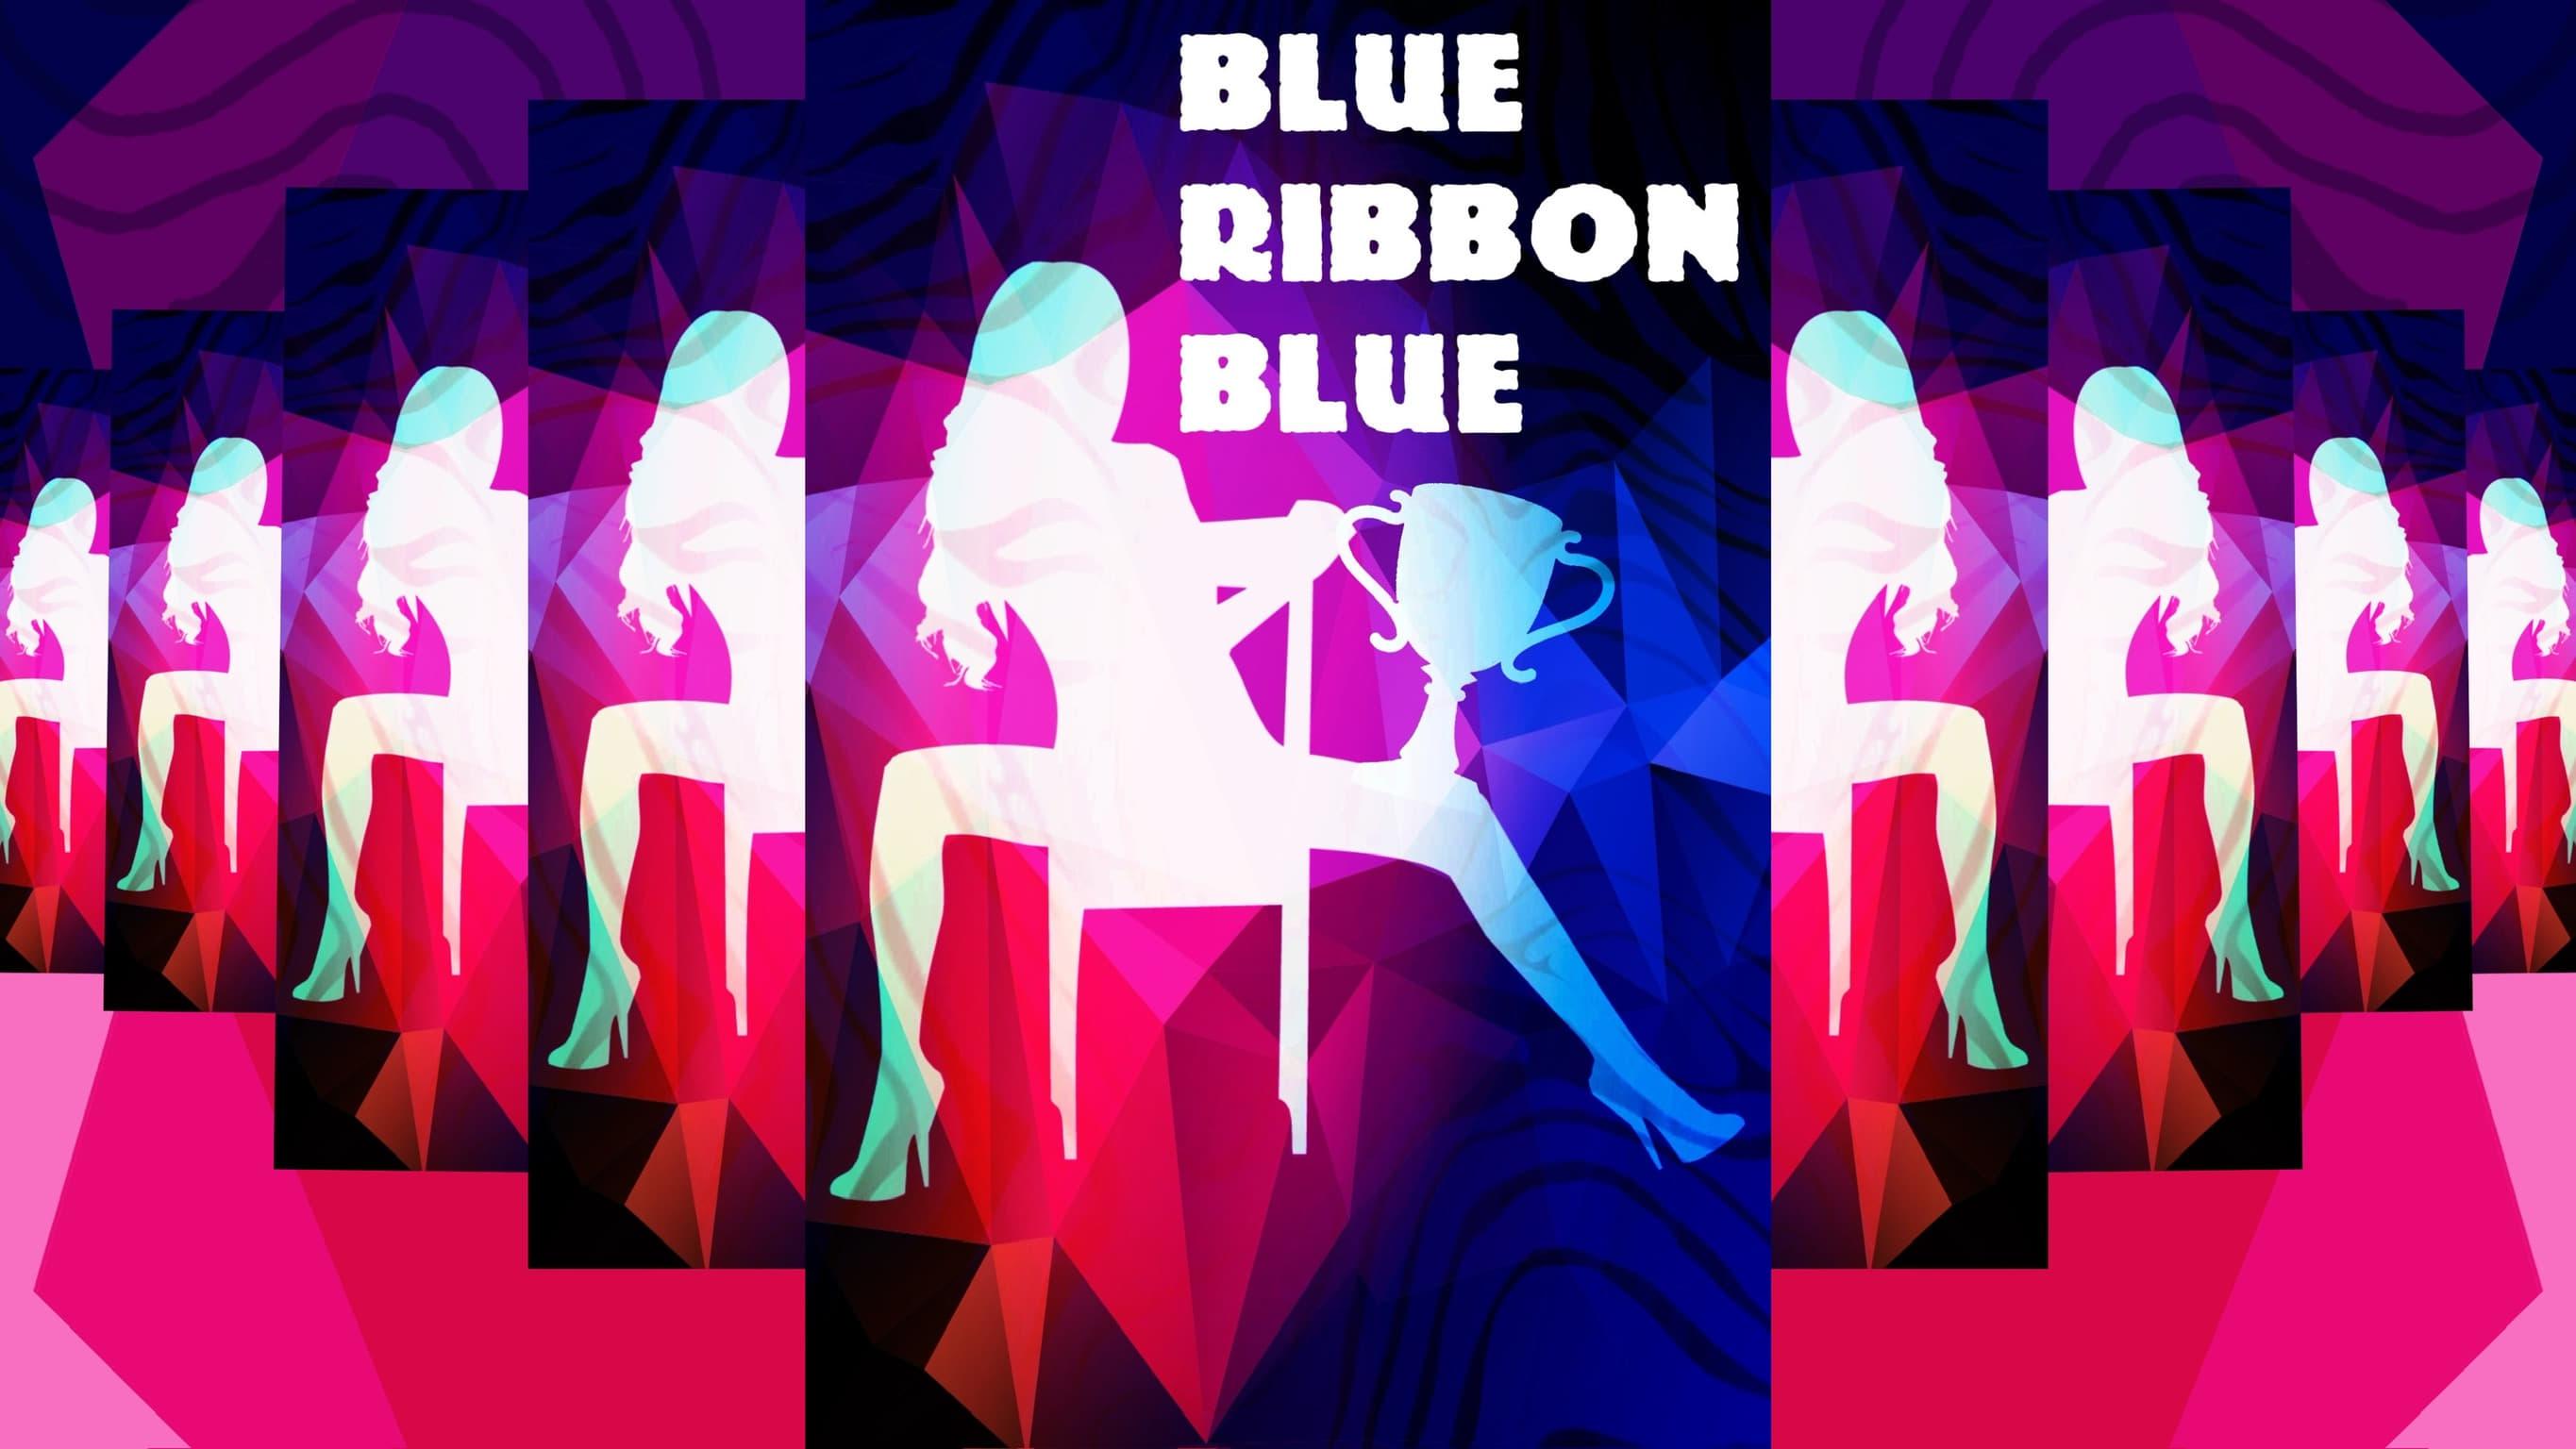 Blue Ribbon Blue backdrop